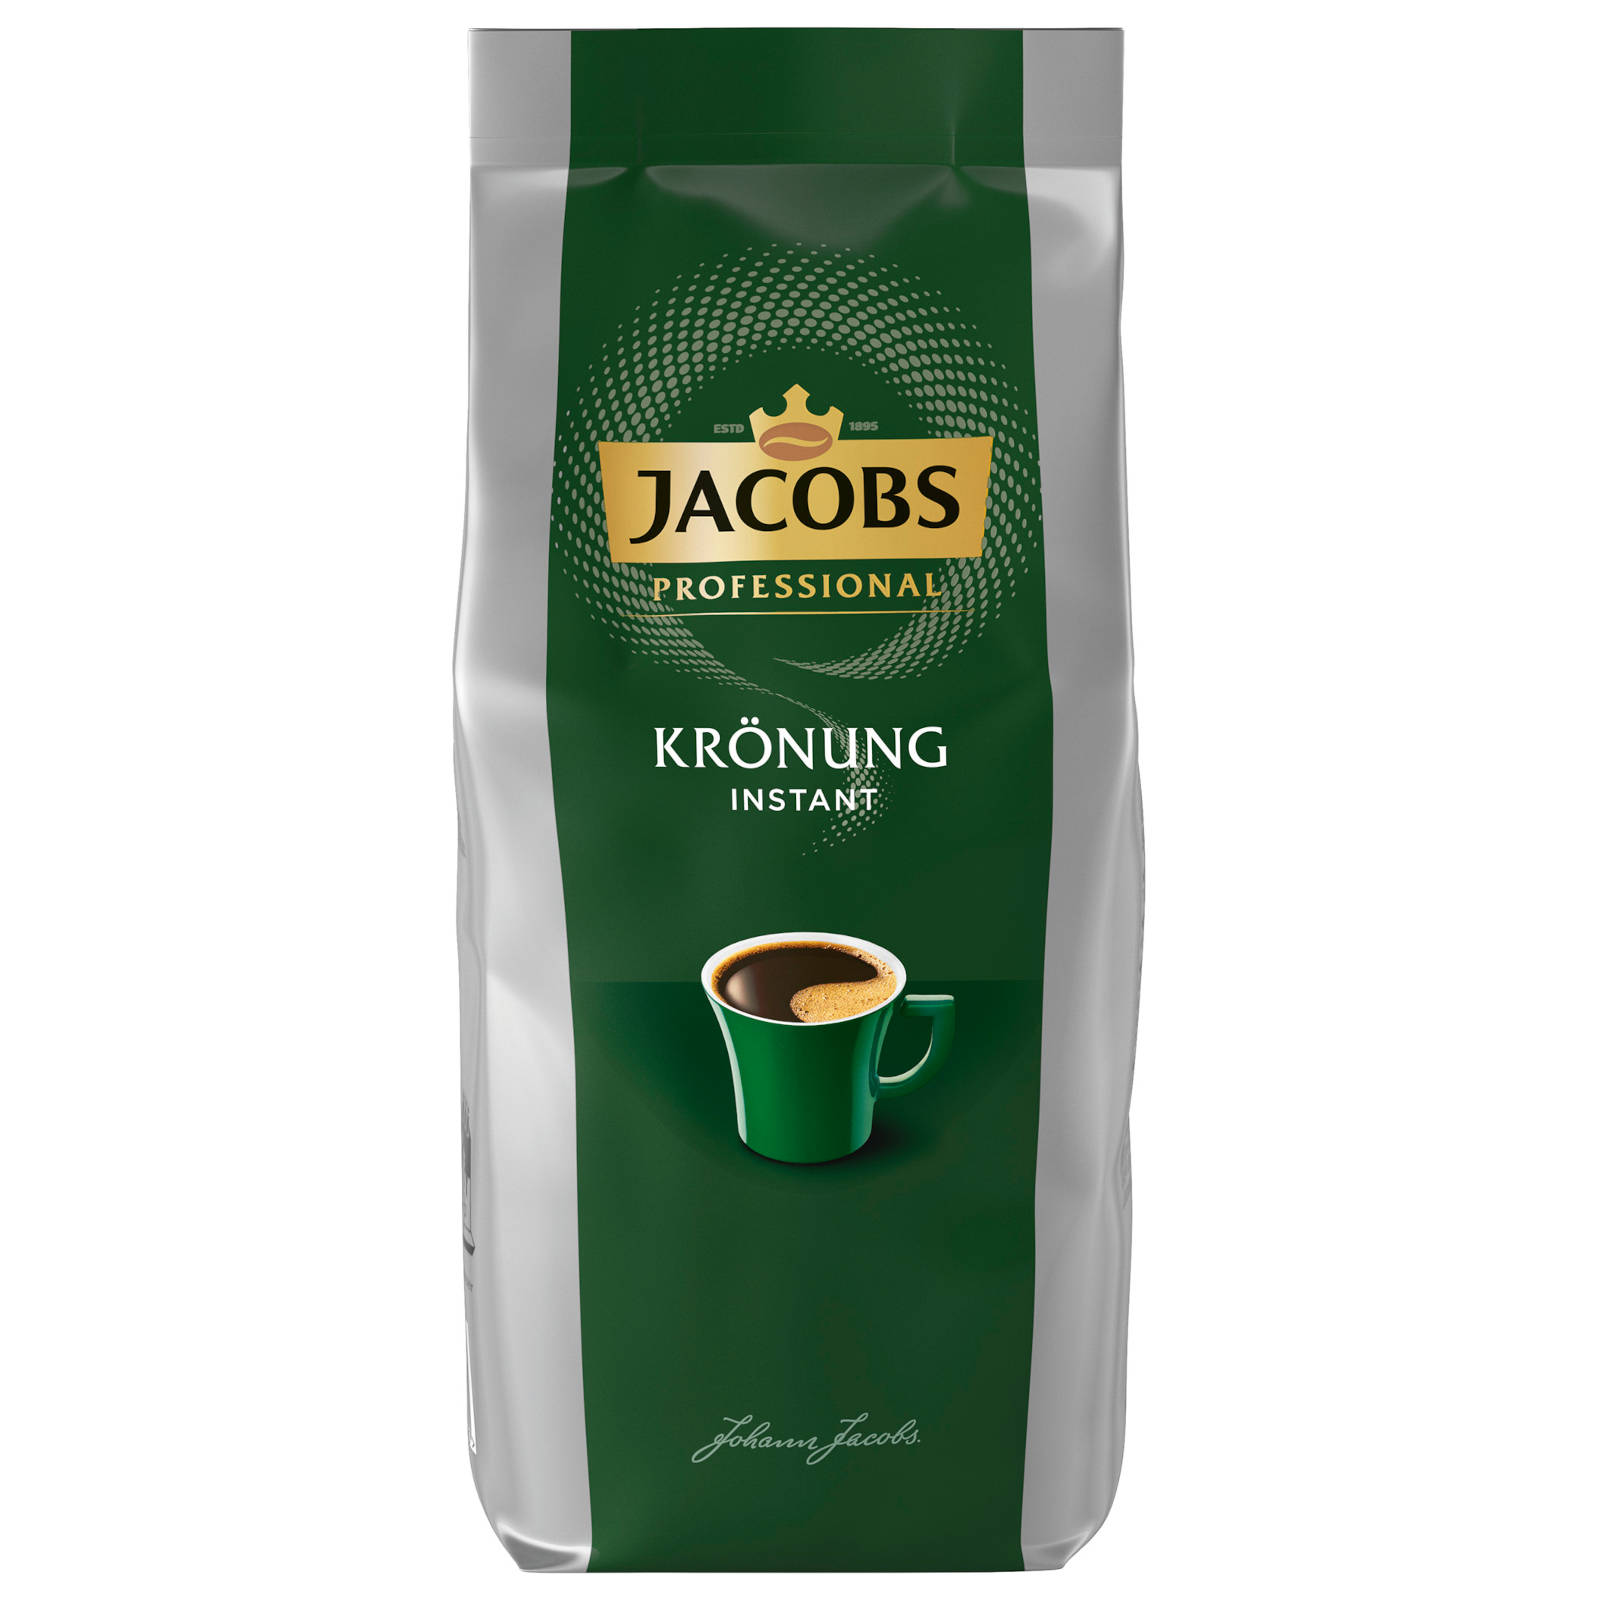 JACOBS Professional auflösen, Krönung heißem (In Heißgetränkeautomaten) g Instantkaffee 8x500 Wasser